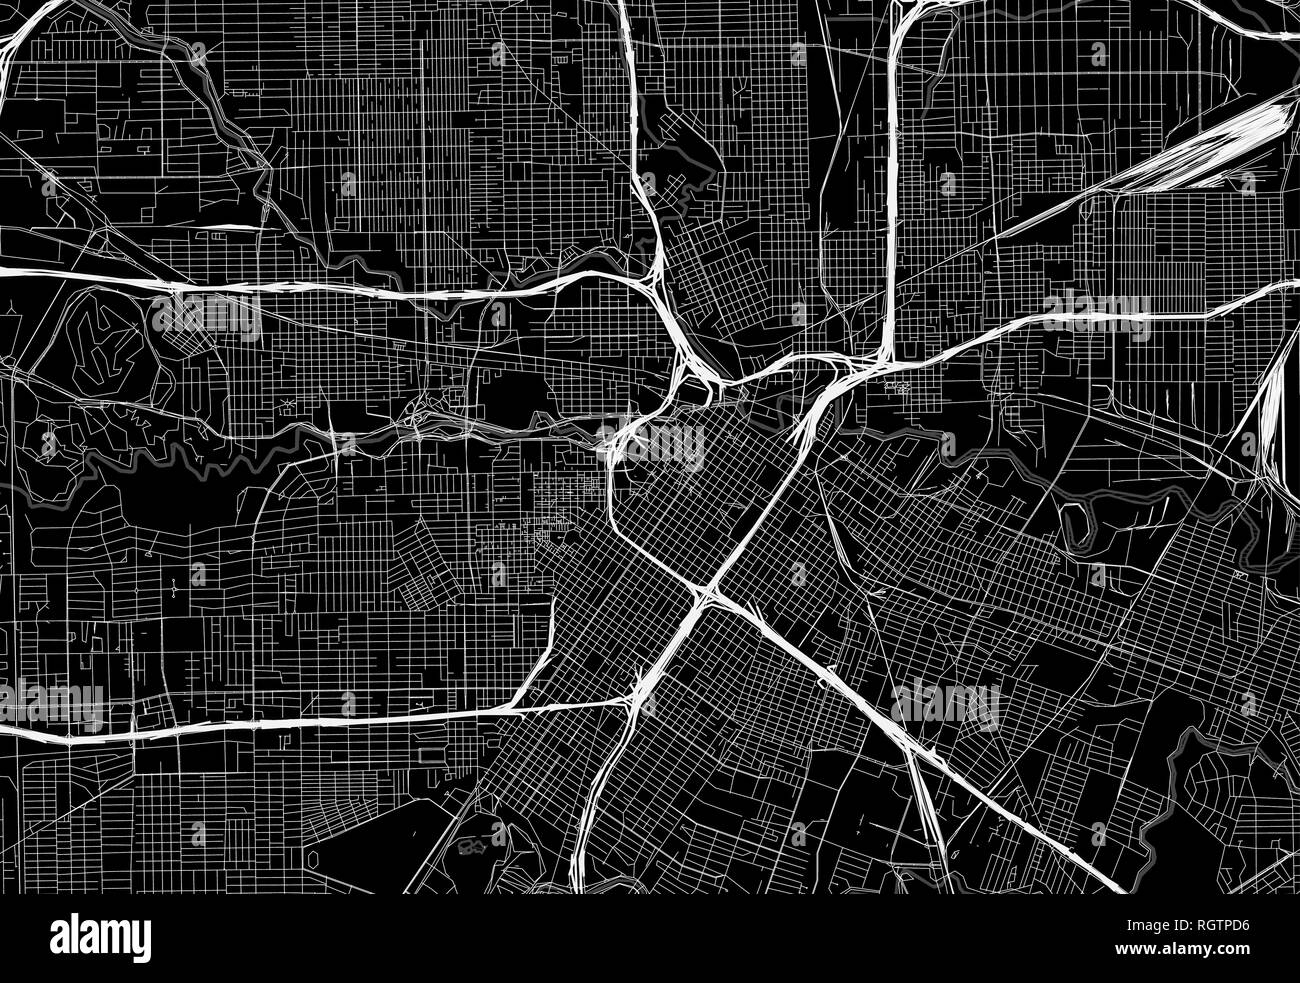 Schwarze Karte von Downtown Houston, USA Dieser Vektor artmap ist als dekorativer Hintergrund oder eine einmalige Reise Zeichen erstellt. Stock Vektor